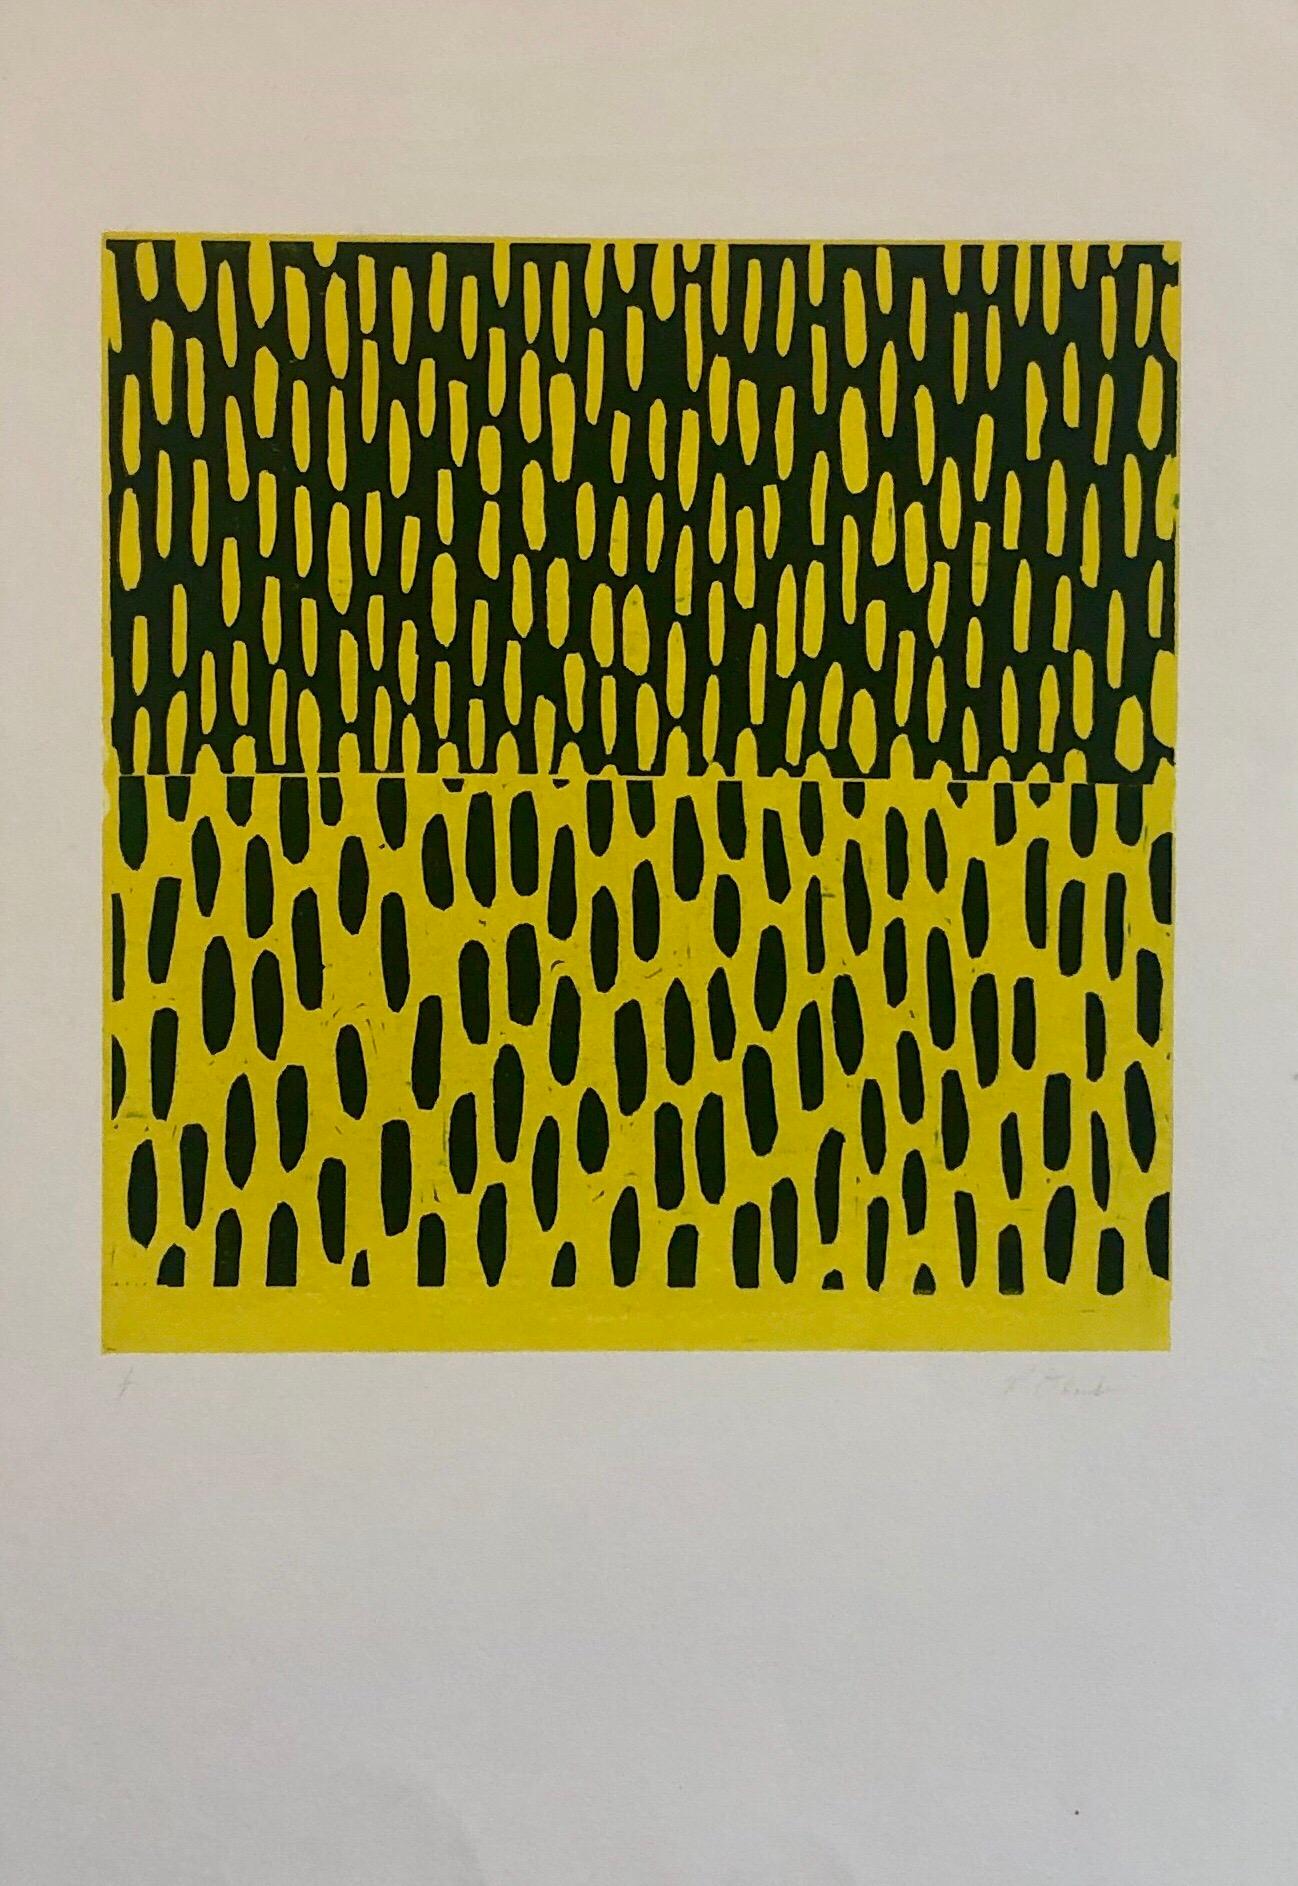 Gelb-blauer Monodruck Monotypie-Gemäldedruck im abstrakten Expressionismus-Stil – Print von Pierre Obando